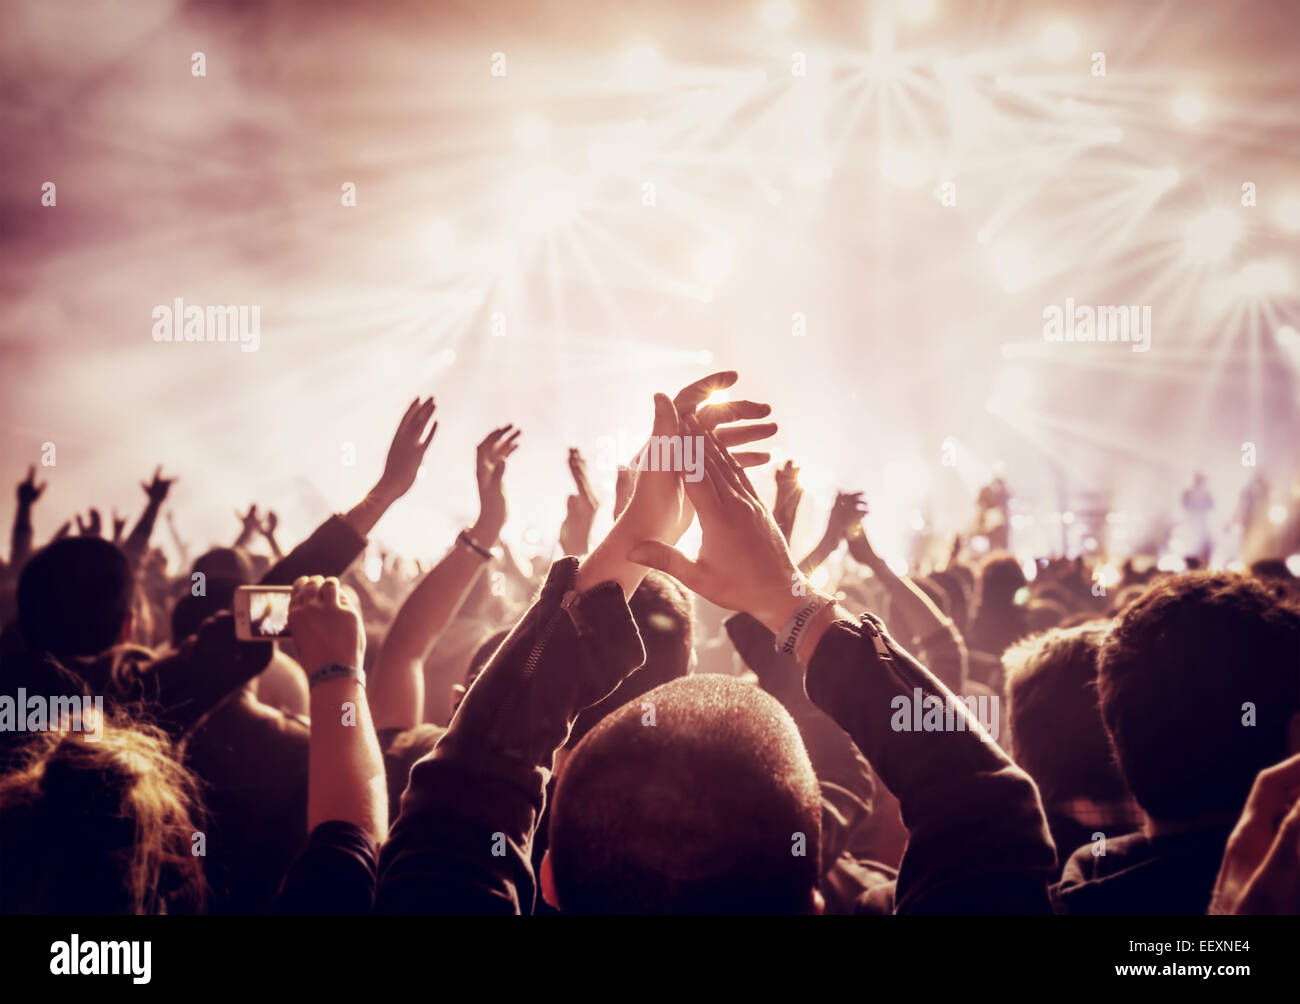 Vintage-Stil-Foto von einer Menschenmenge, glückliche Menschen genießen Rock-Konzert, Hände hob und Händeklatschen Vergnügen, aktives Nachtleben Stockfoto